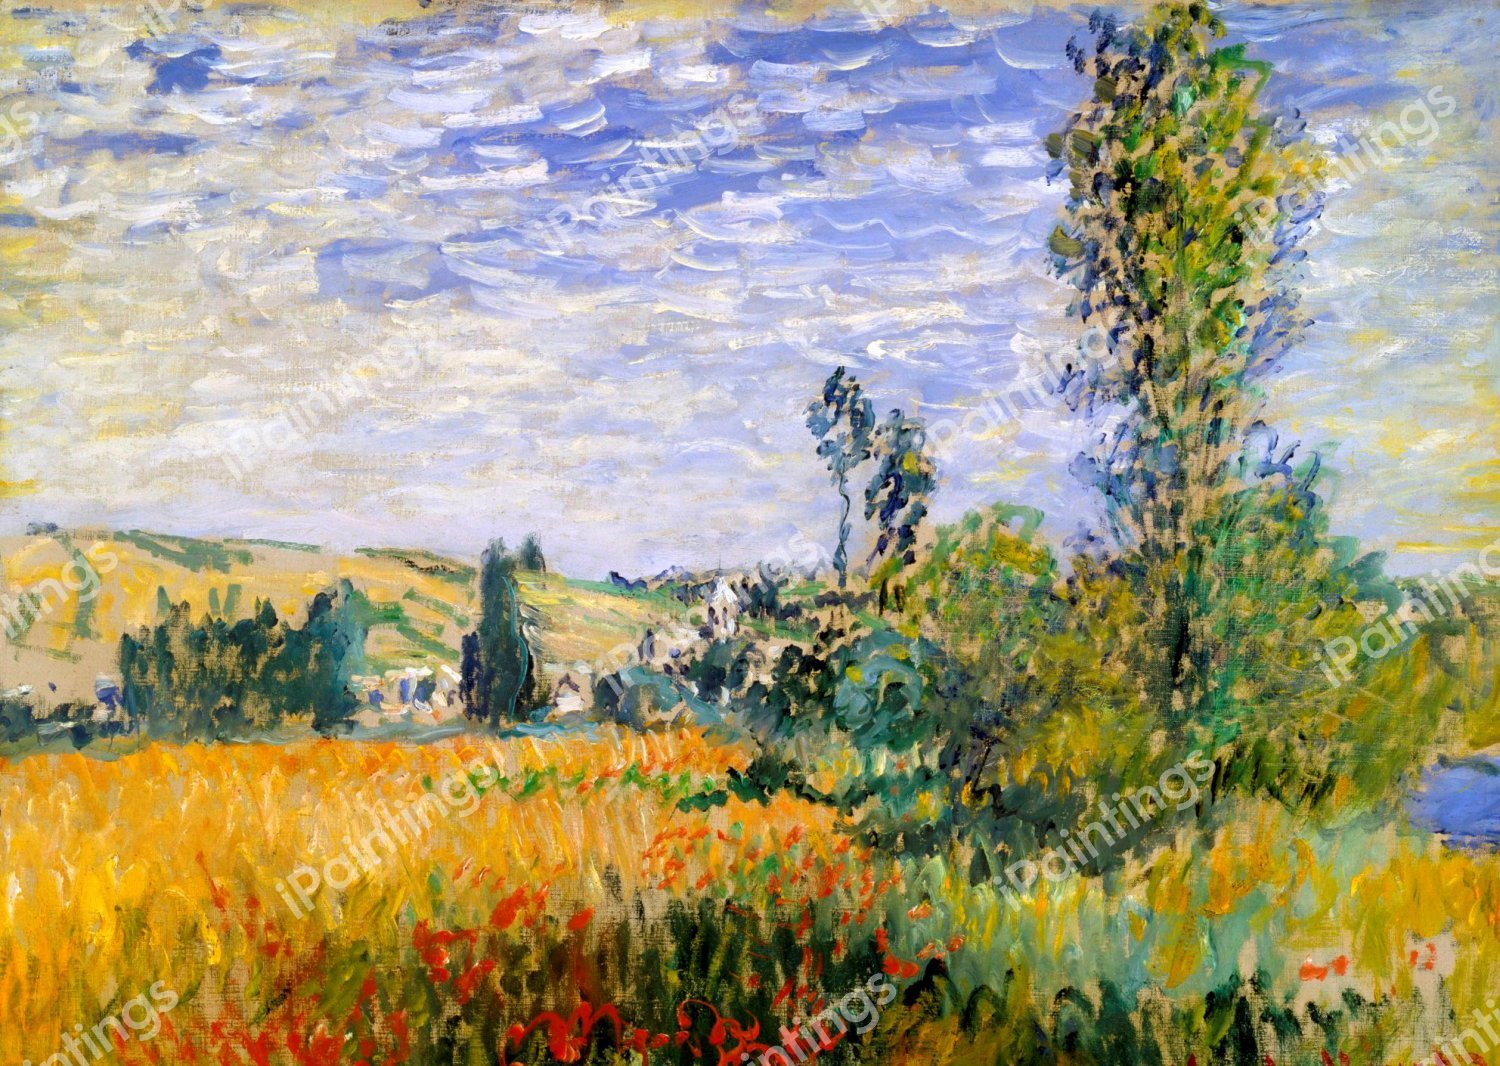 2. Claude Monet Impression Sunrise